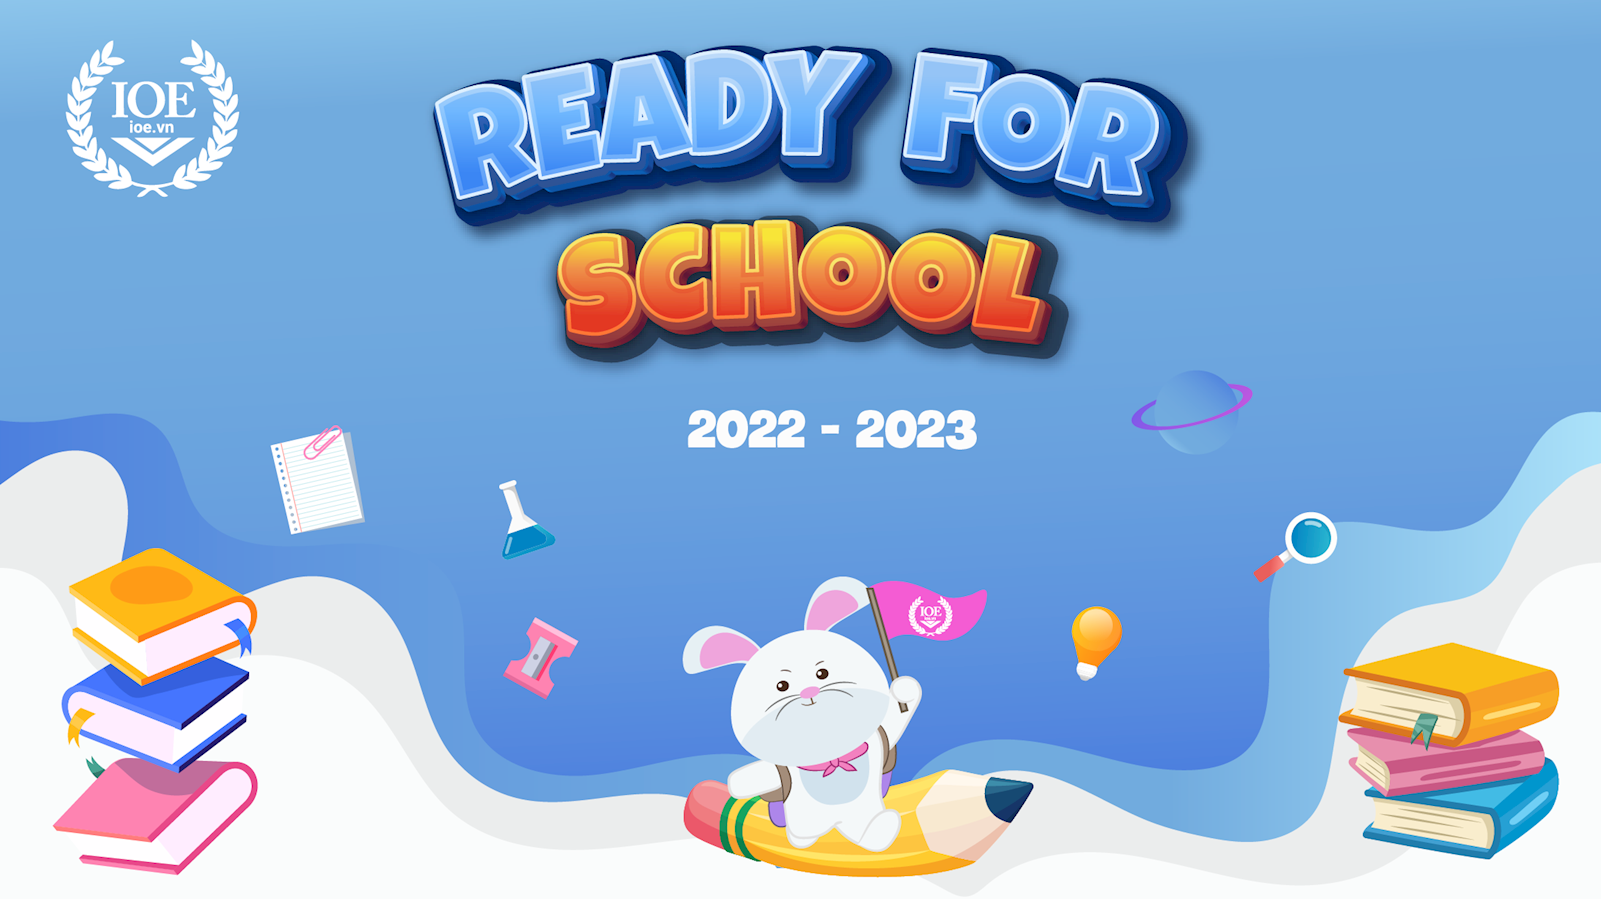 "READY FOR SCHOOL" - Cùng IOE khởi động năm học 2022 - 2023